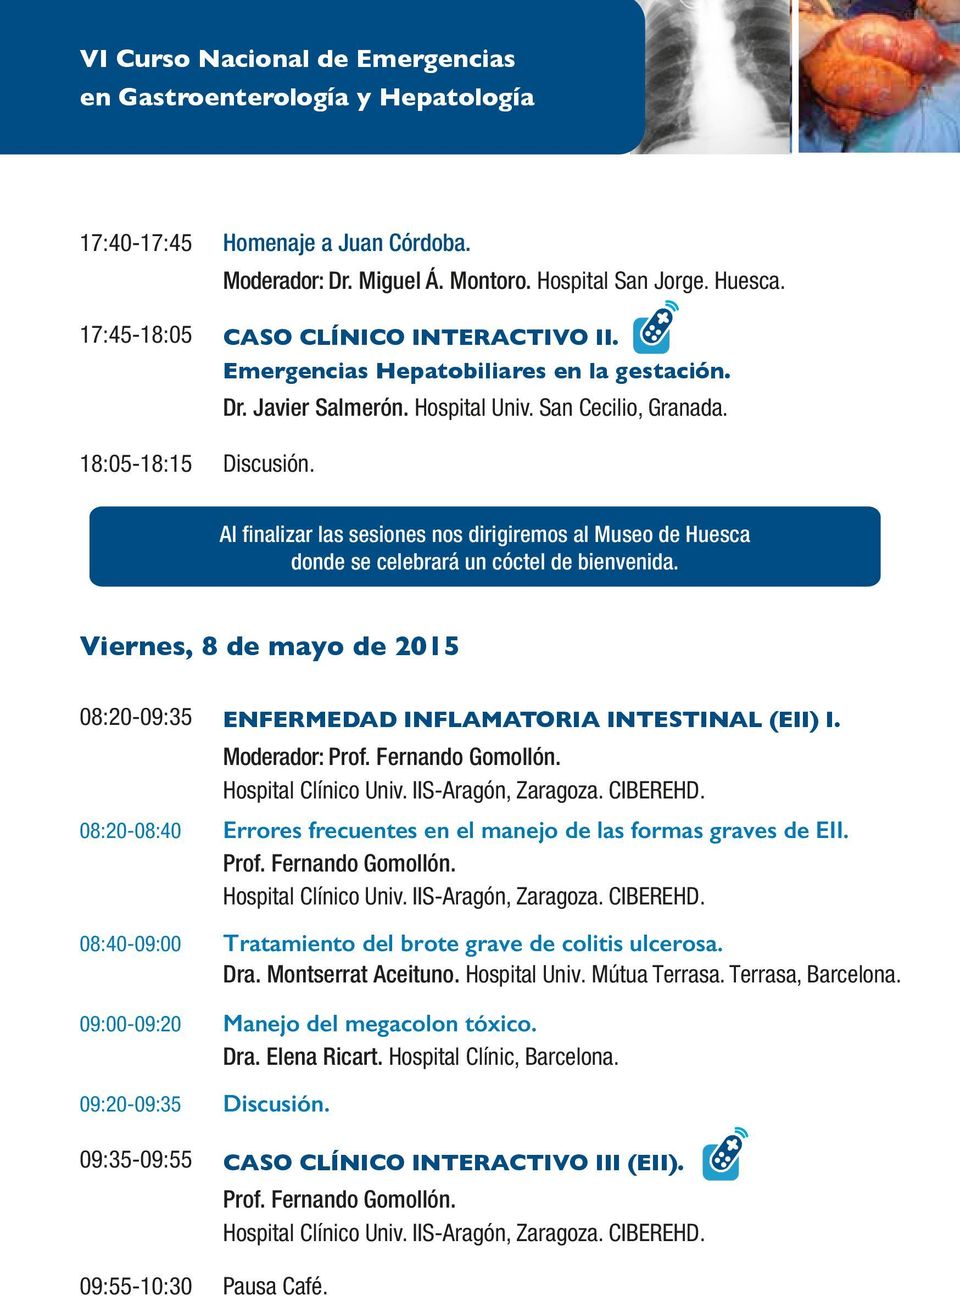 Viernes, 8 de mayo de 2015 08:20-09:35 ENFERMEDAD INFLAMATORIA INTESTINAL (EII) I. Moderador: Prof. Fernando Gomollón. Hospital Clínico Univ. IIS-Aragón, Zaragoza. CIBEREHD.